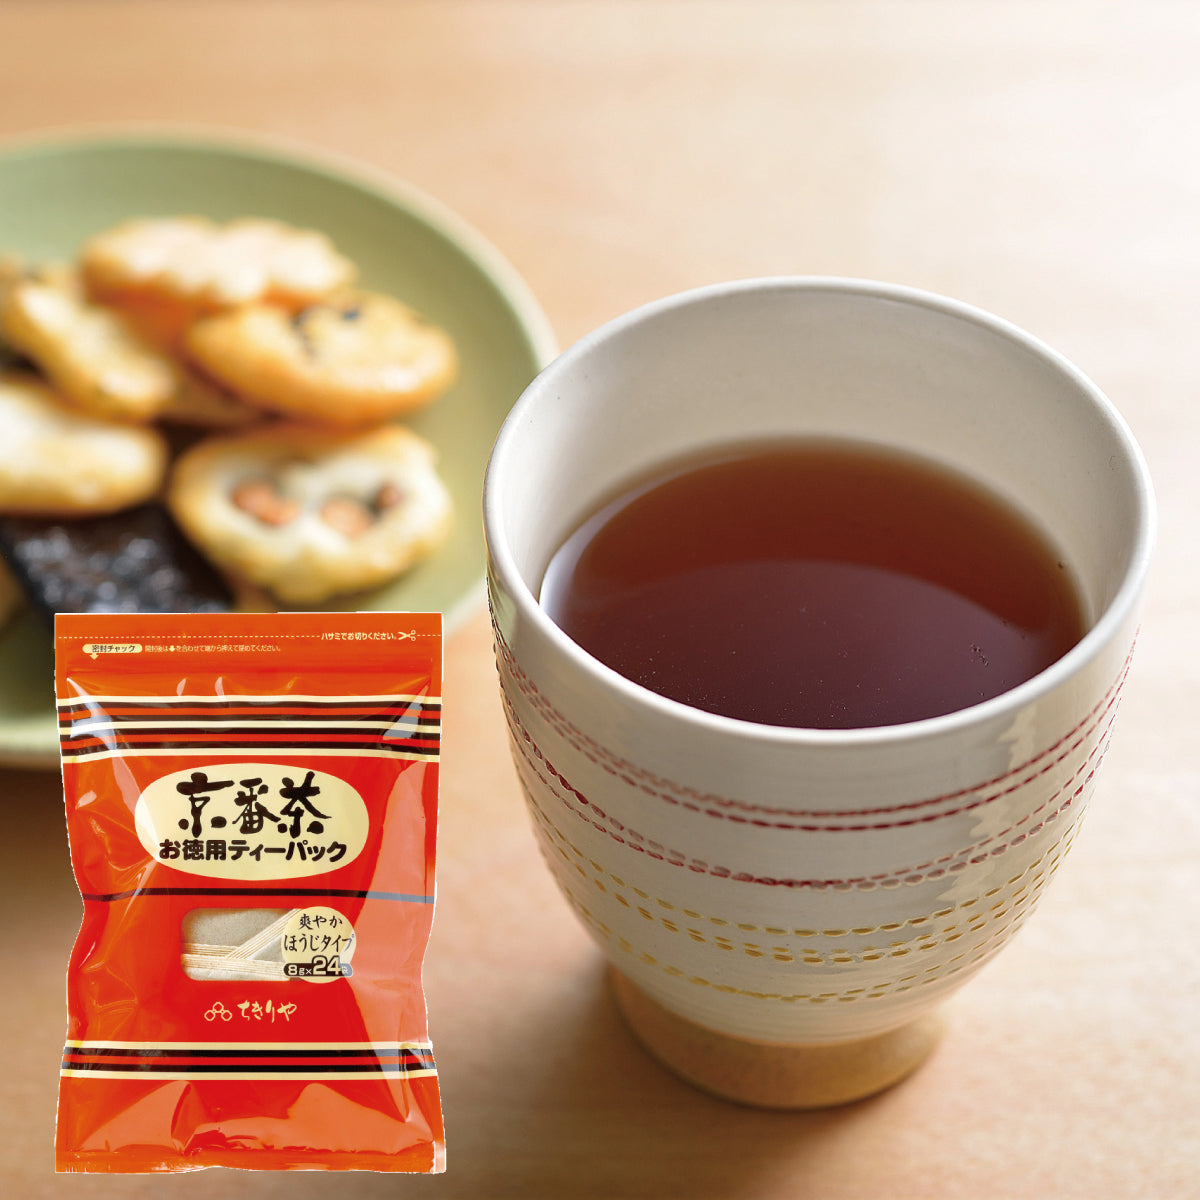 Kyobancha (Thé vert japonais torréfié) - 24 Sachets de thé